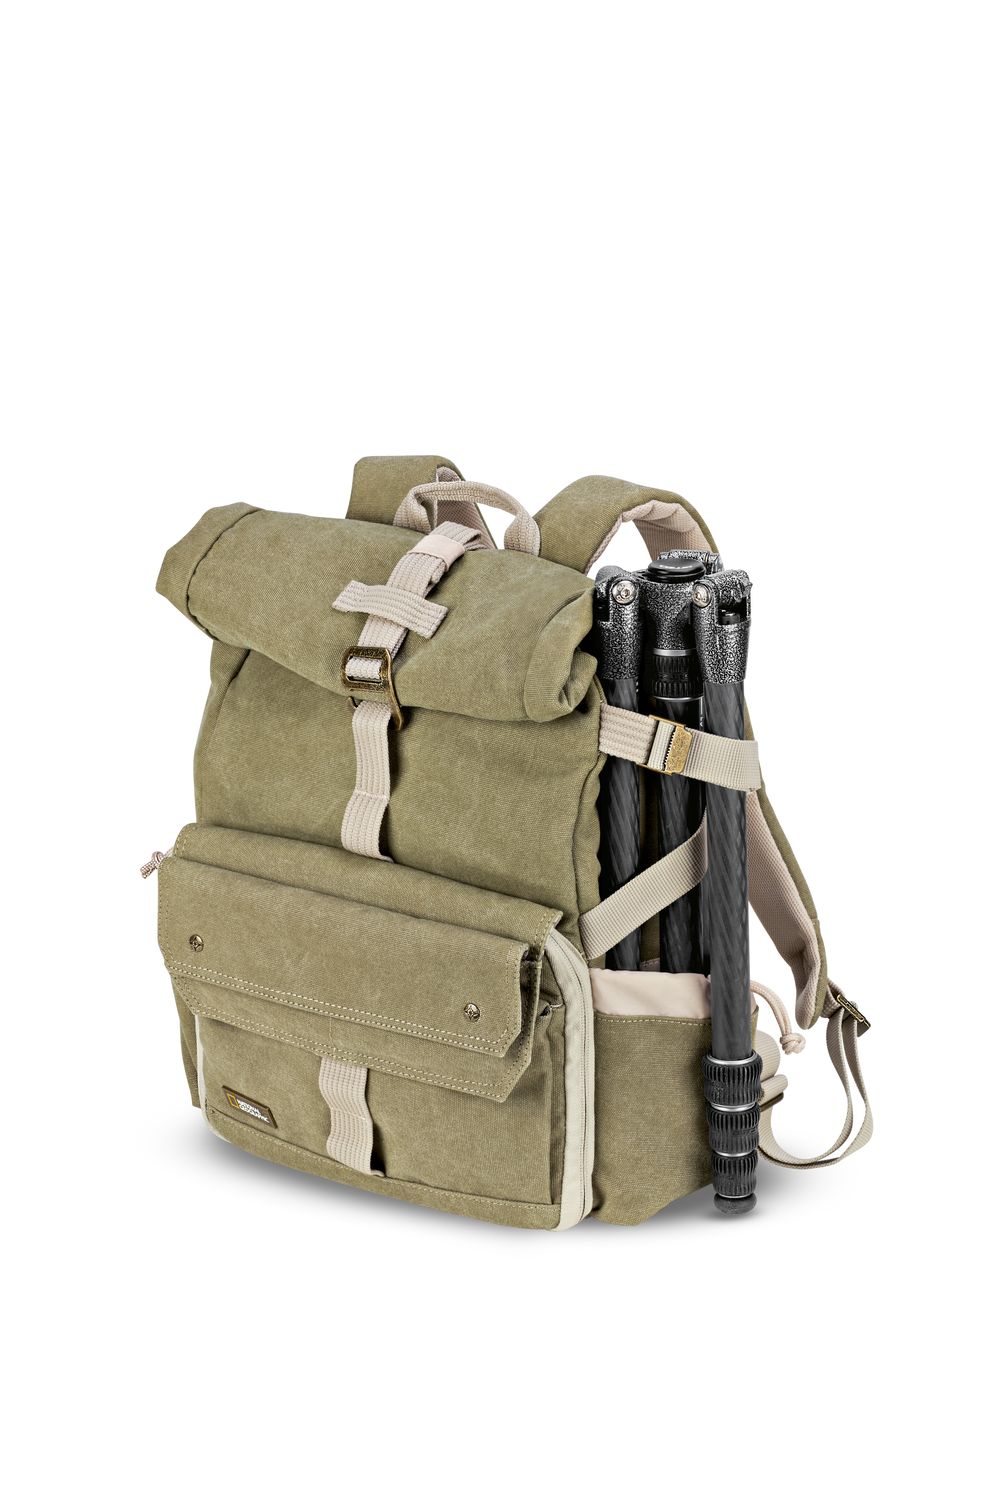 small-camera-backpack-national-geographic-ng5168-12.jpg